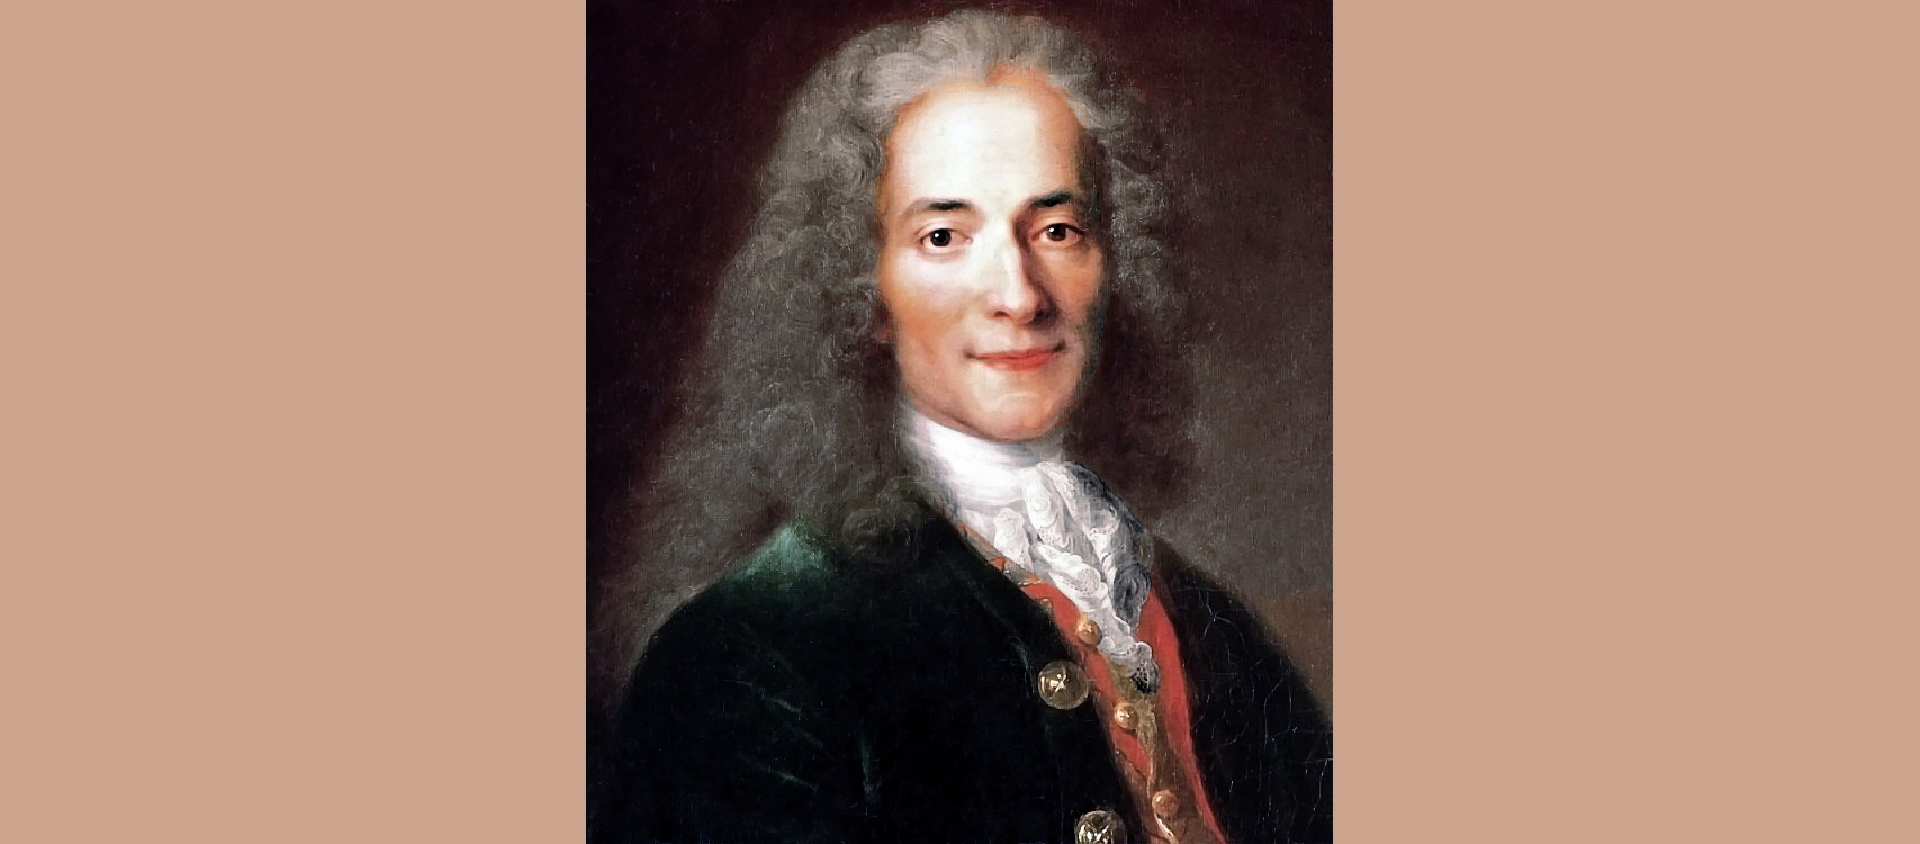 Voltaire à l'âge de 24 ans. Portrait. Huile sur toile de Nicolas de Largillière, vers 1718. Musée Carnavalet | Domaine public